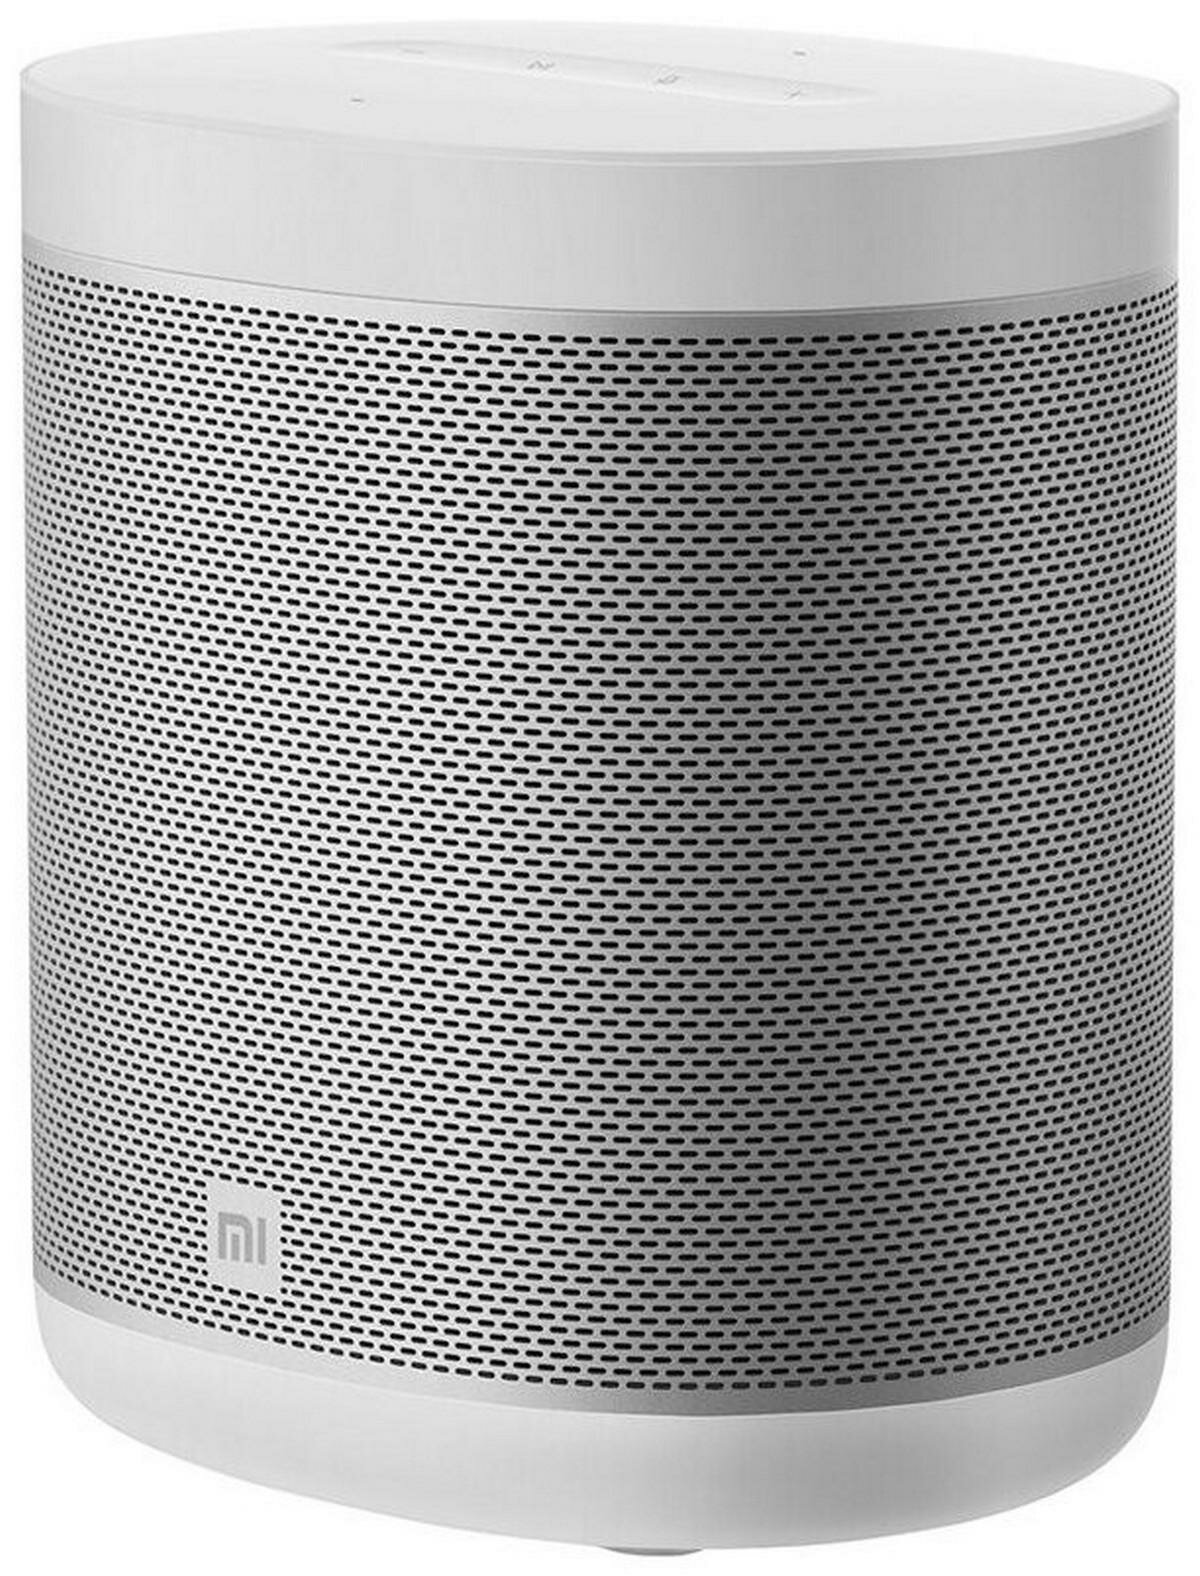 Колонка блютуз портативная MI Smart Speaker. Беспроводная колонка встроен высокочувствительный микрофон (QBH4221RU)